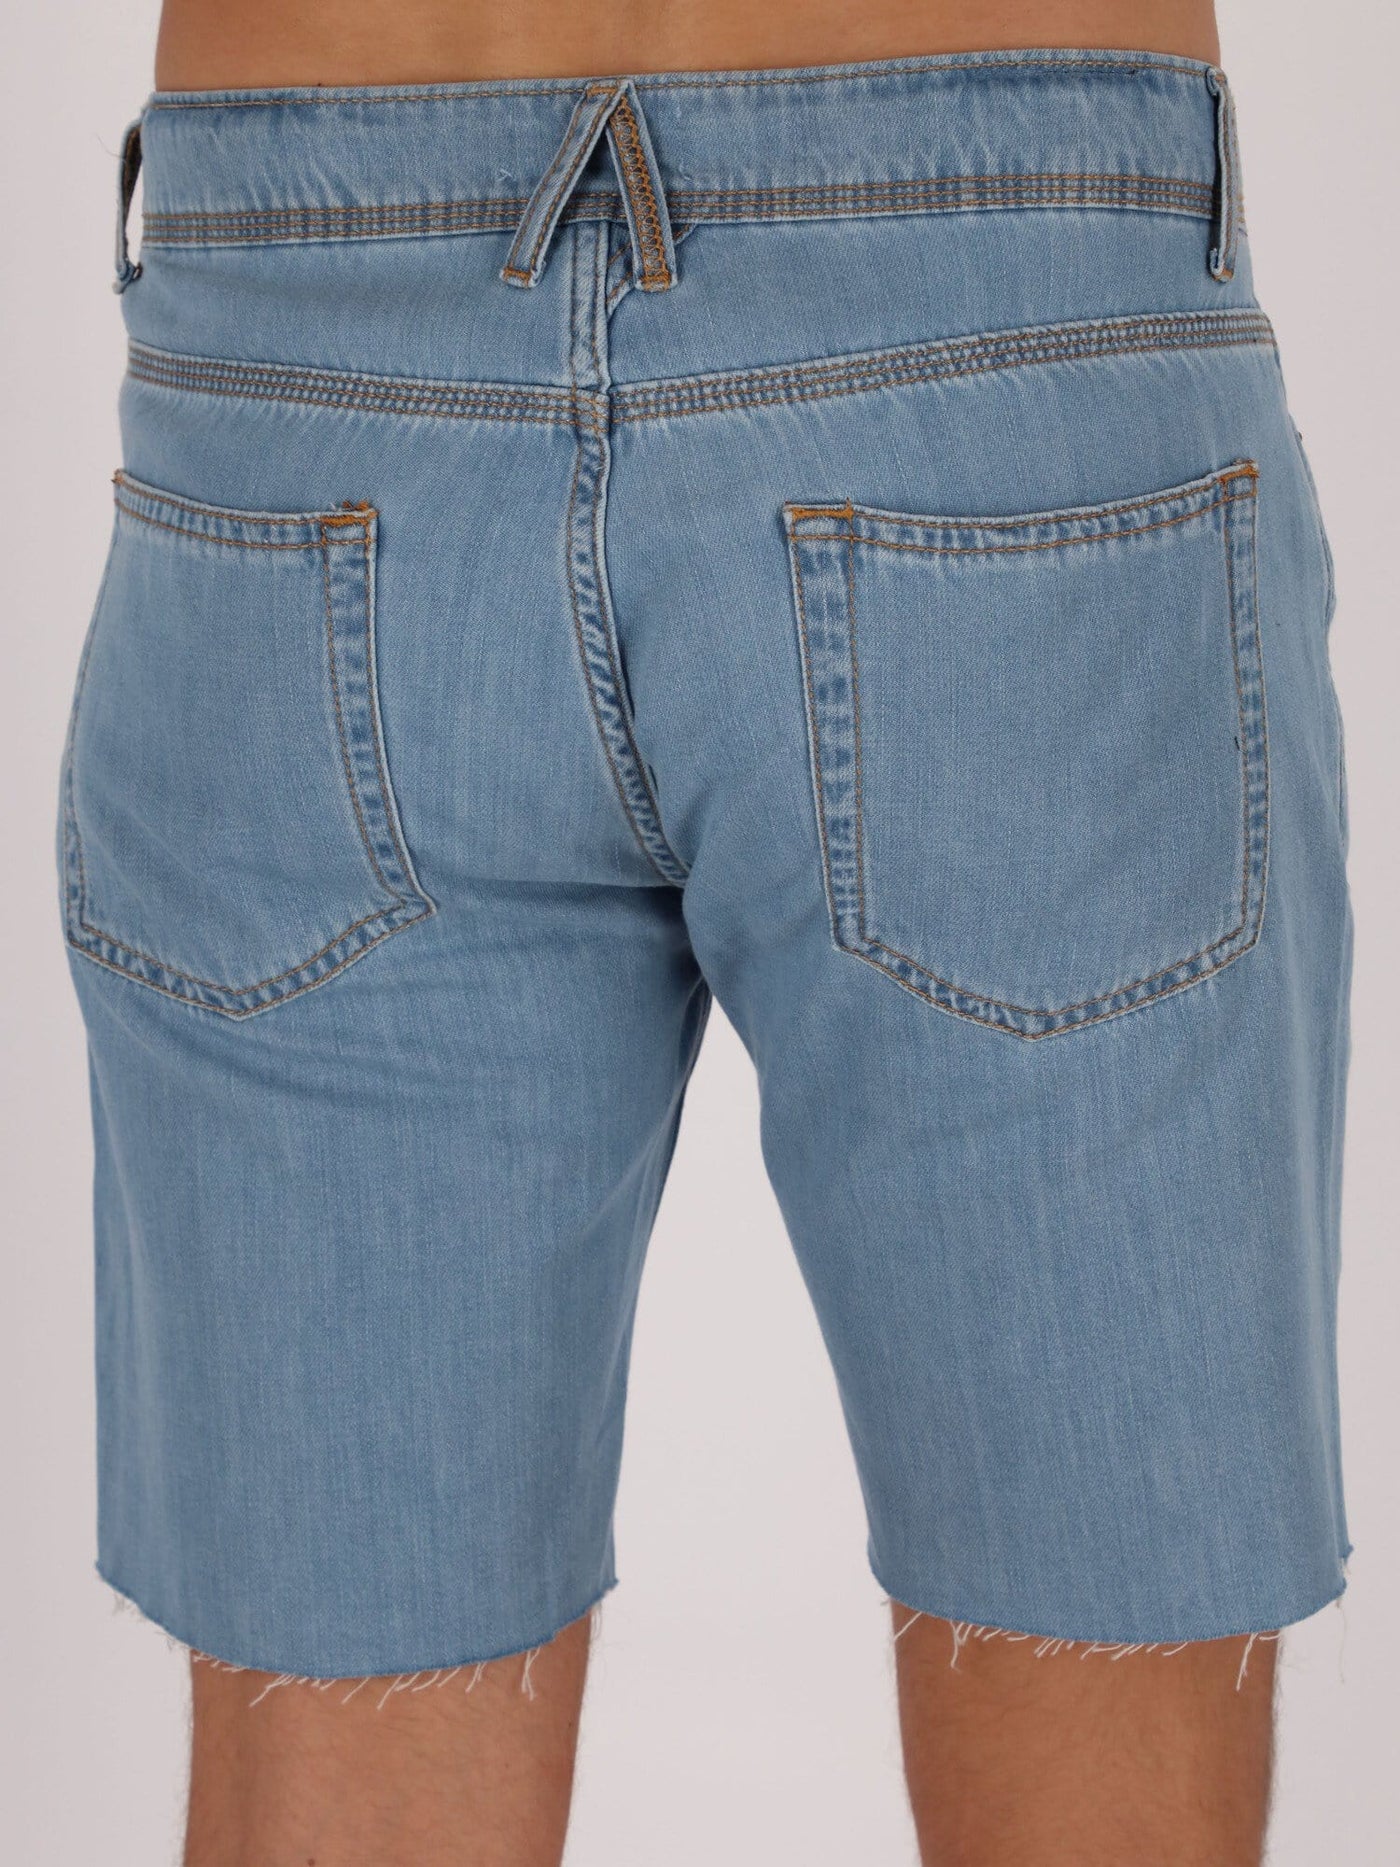 OR Pants & Shorts Raw Trims Denim Shorts